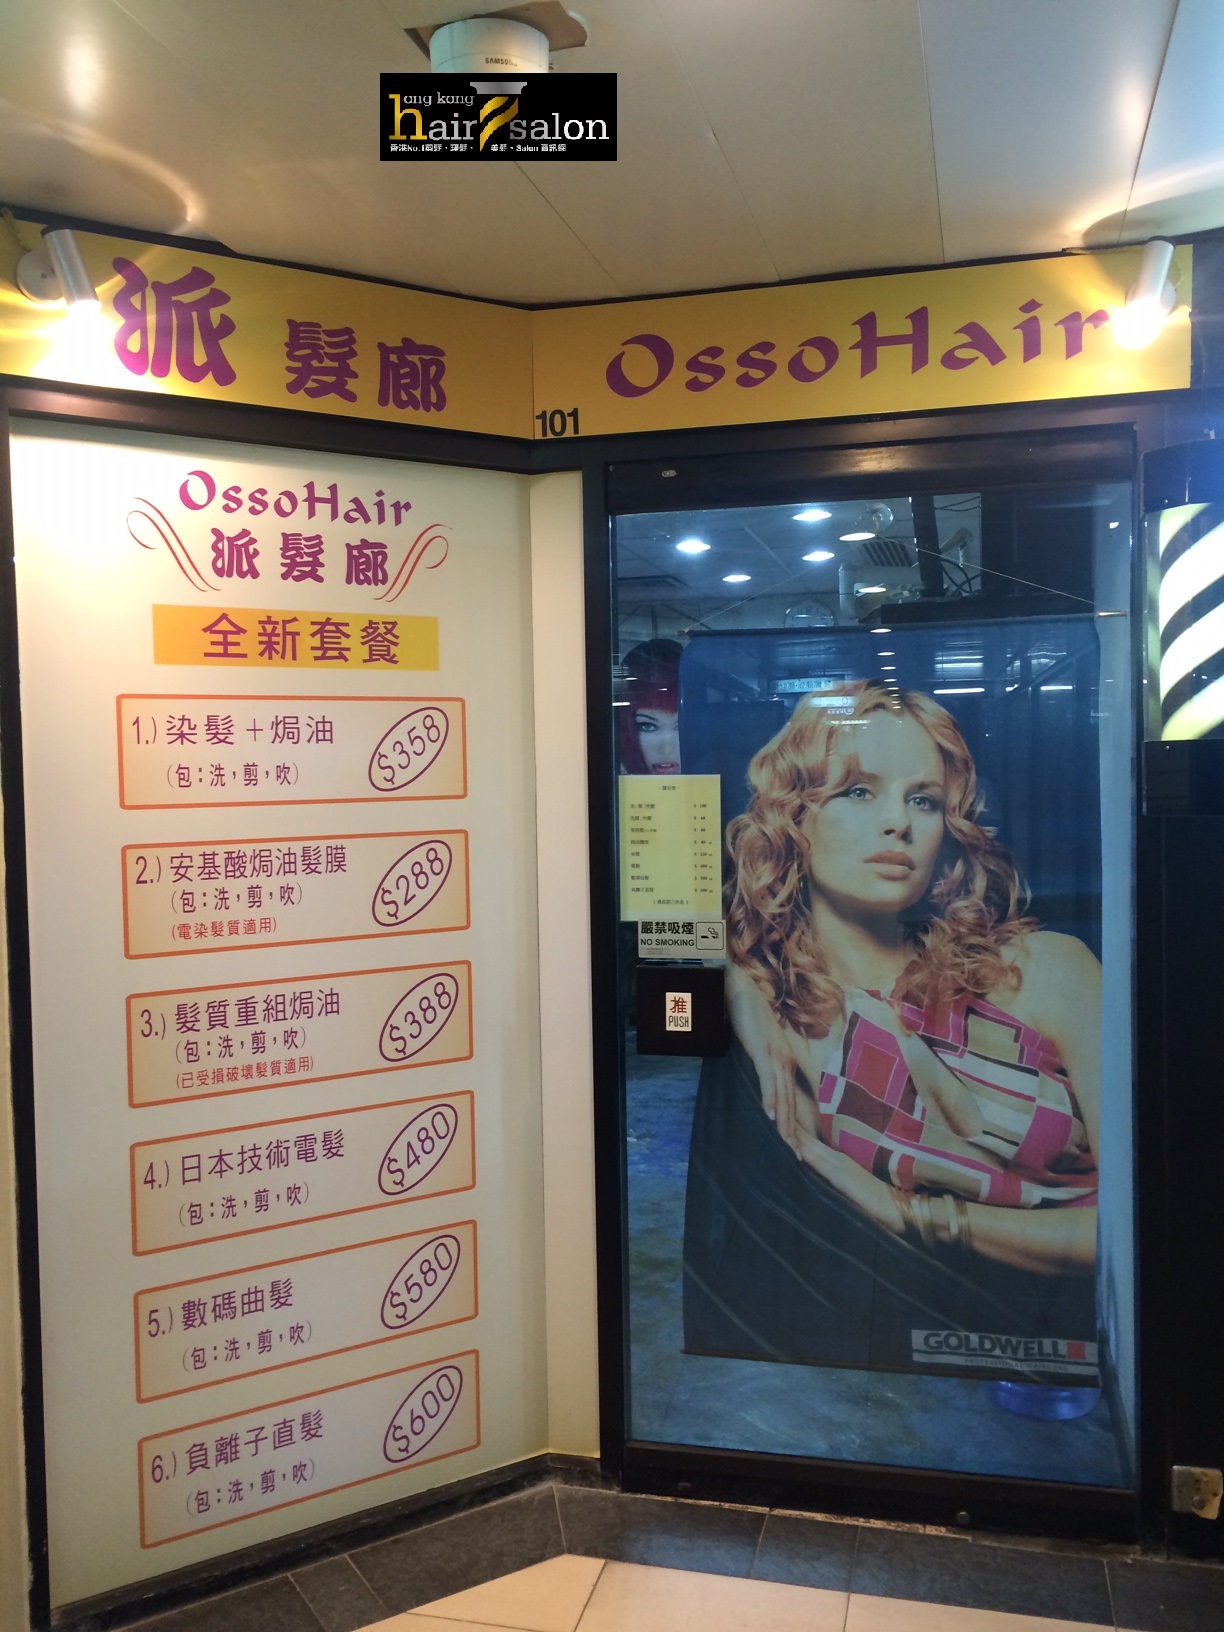 髮型屋: Osso Hair 派髮廊